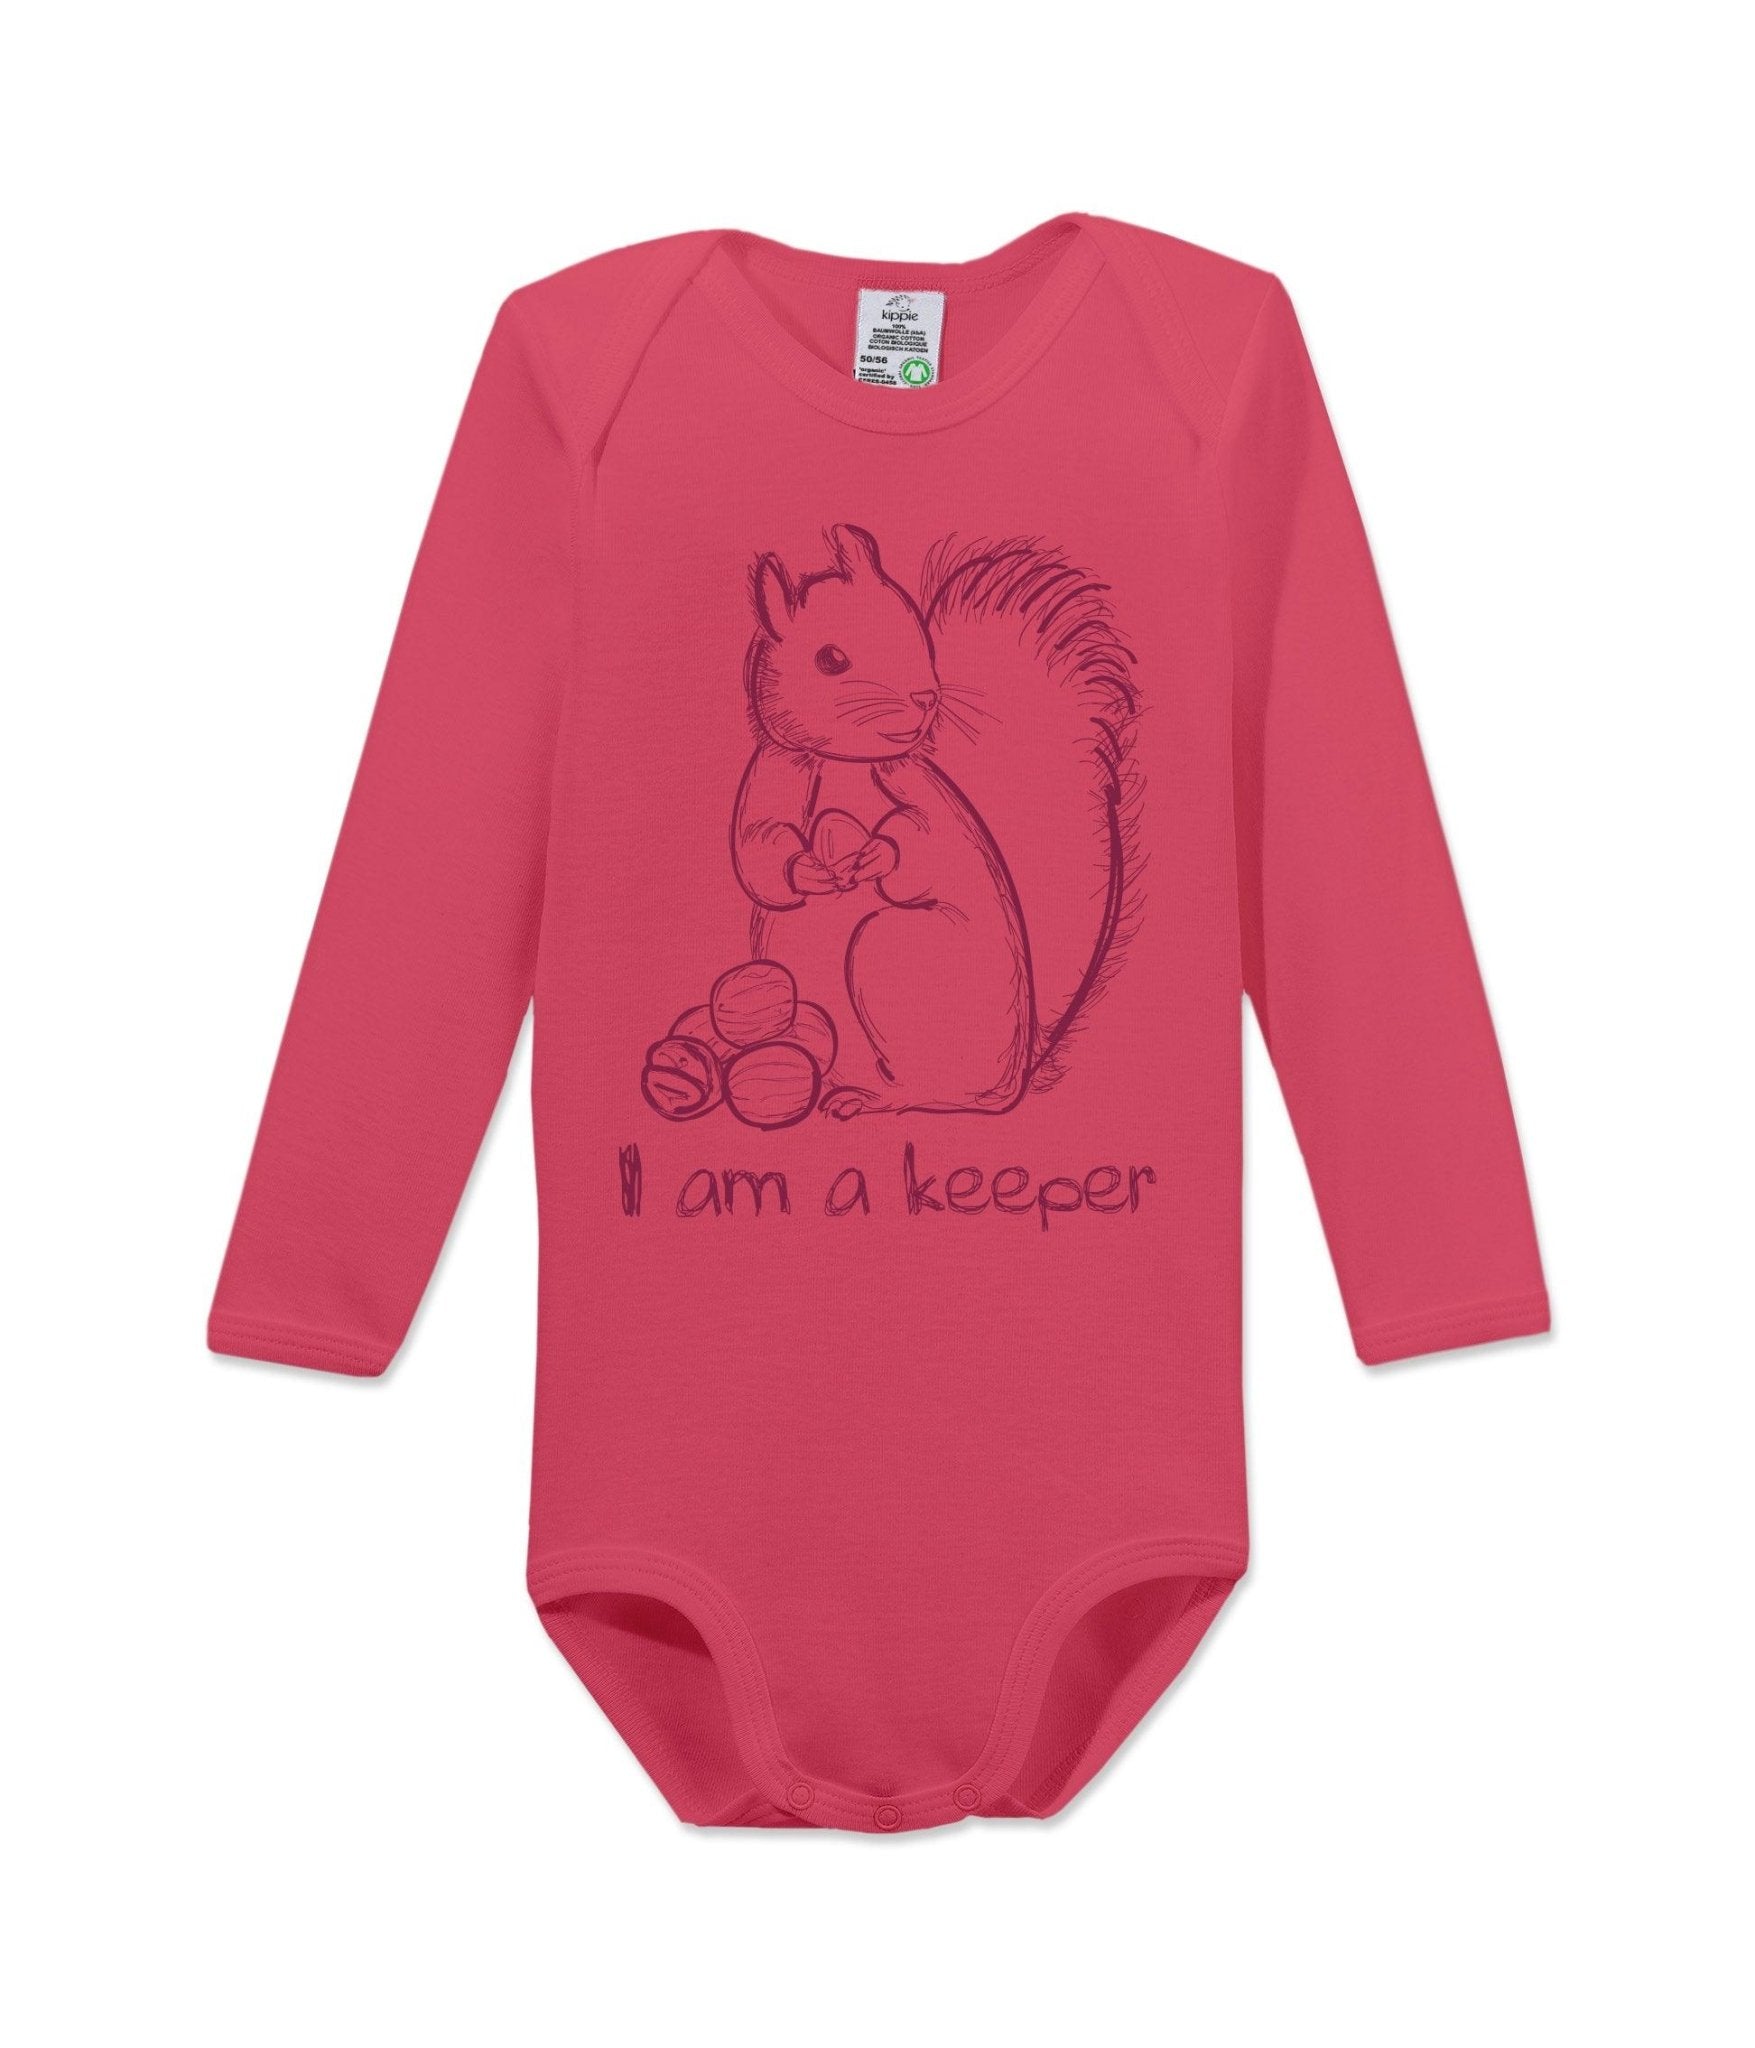 Kippie Langarm-Body – Keeper und weitere Baby Body bei kippie.shop